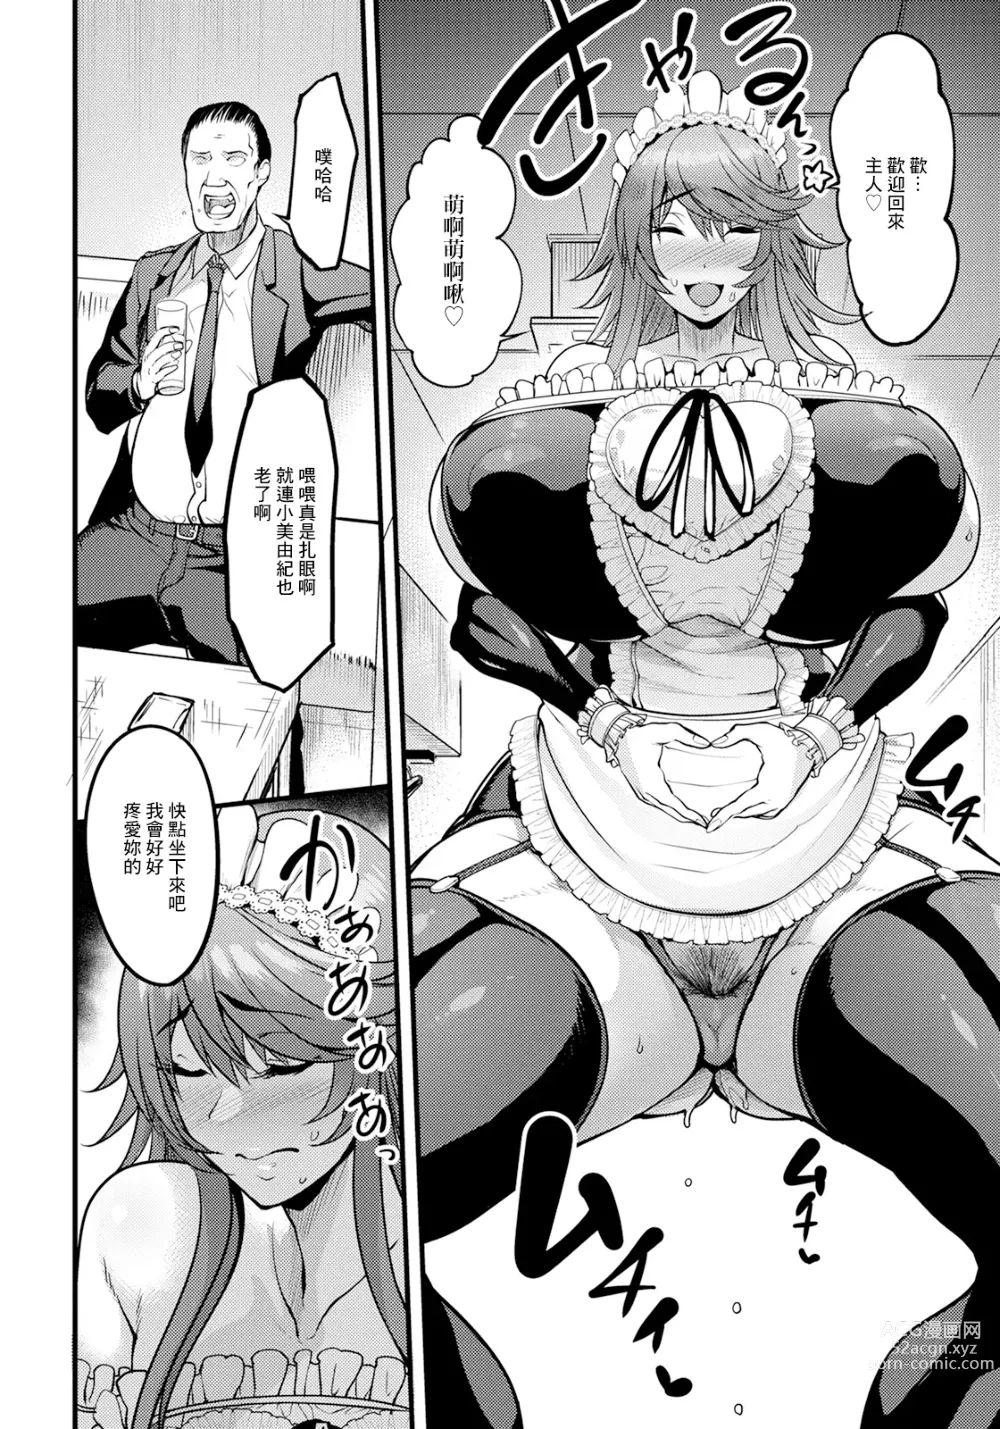 Page 8 of manga Uwa Kitsu Maid Cafe ~Hitozuma Kanjokuten~